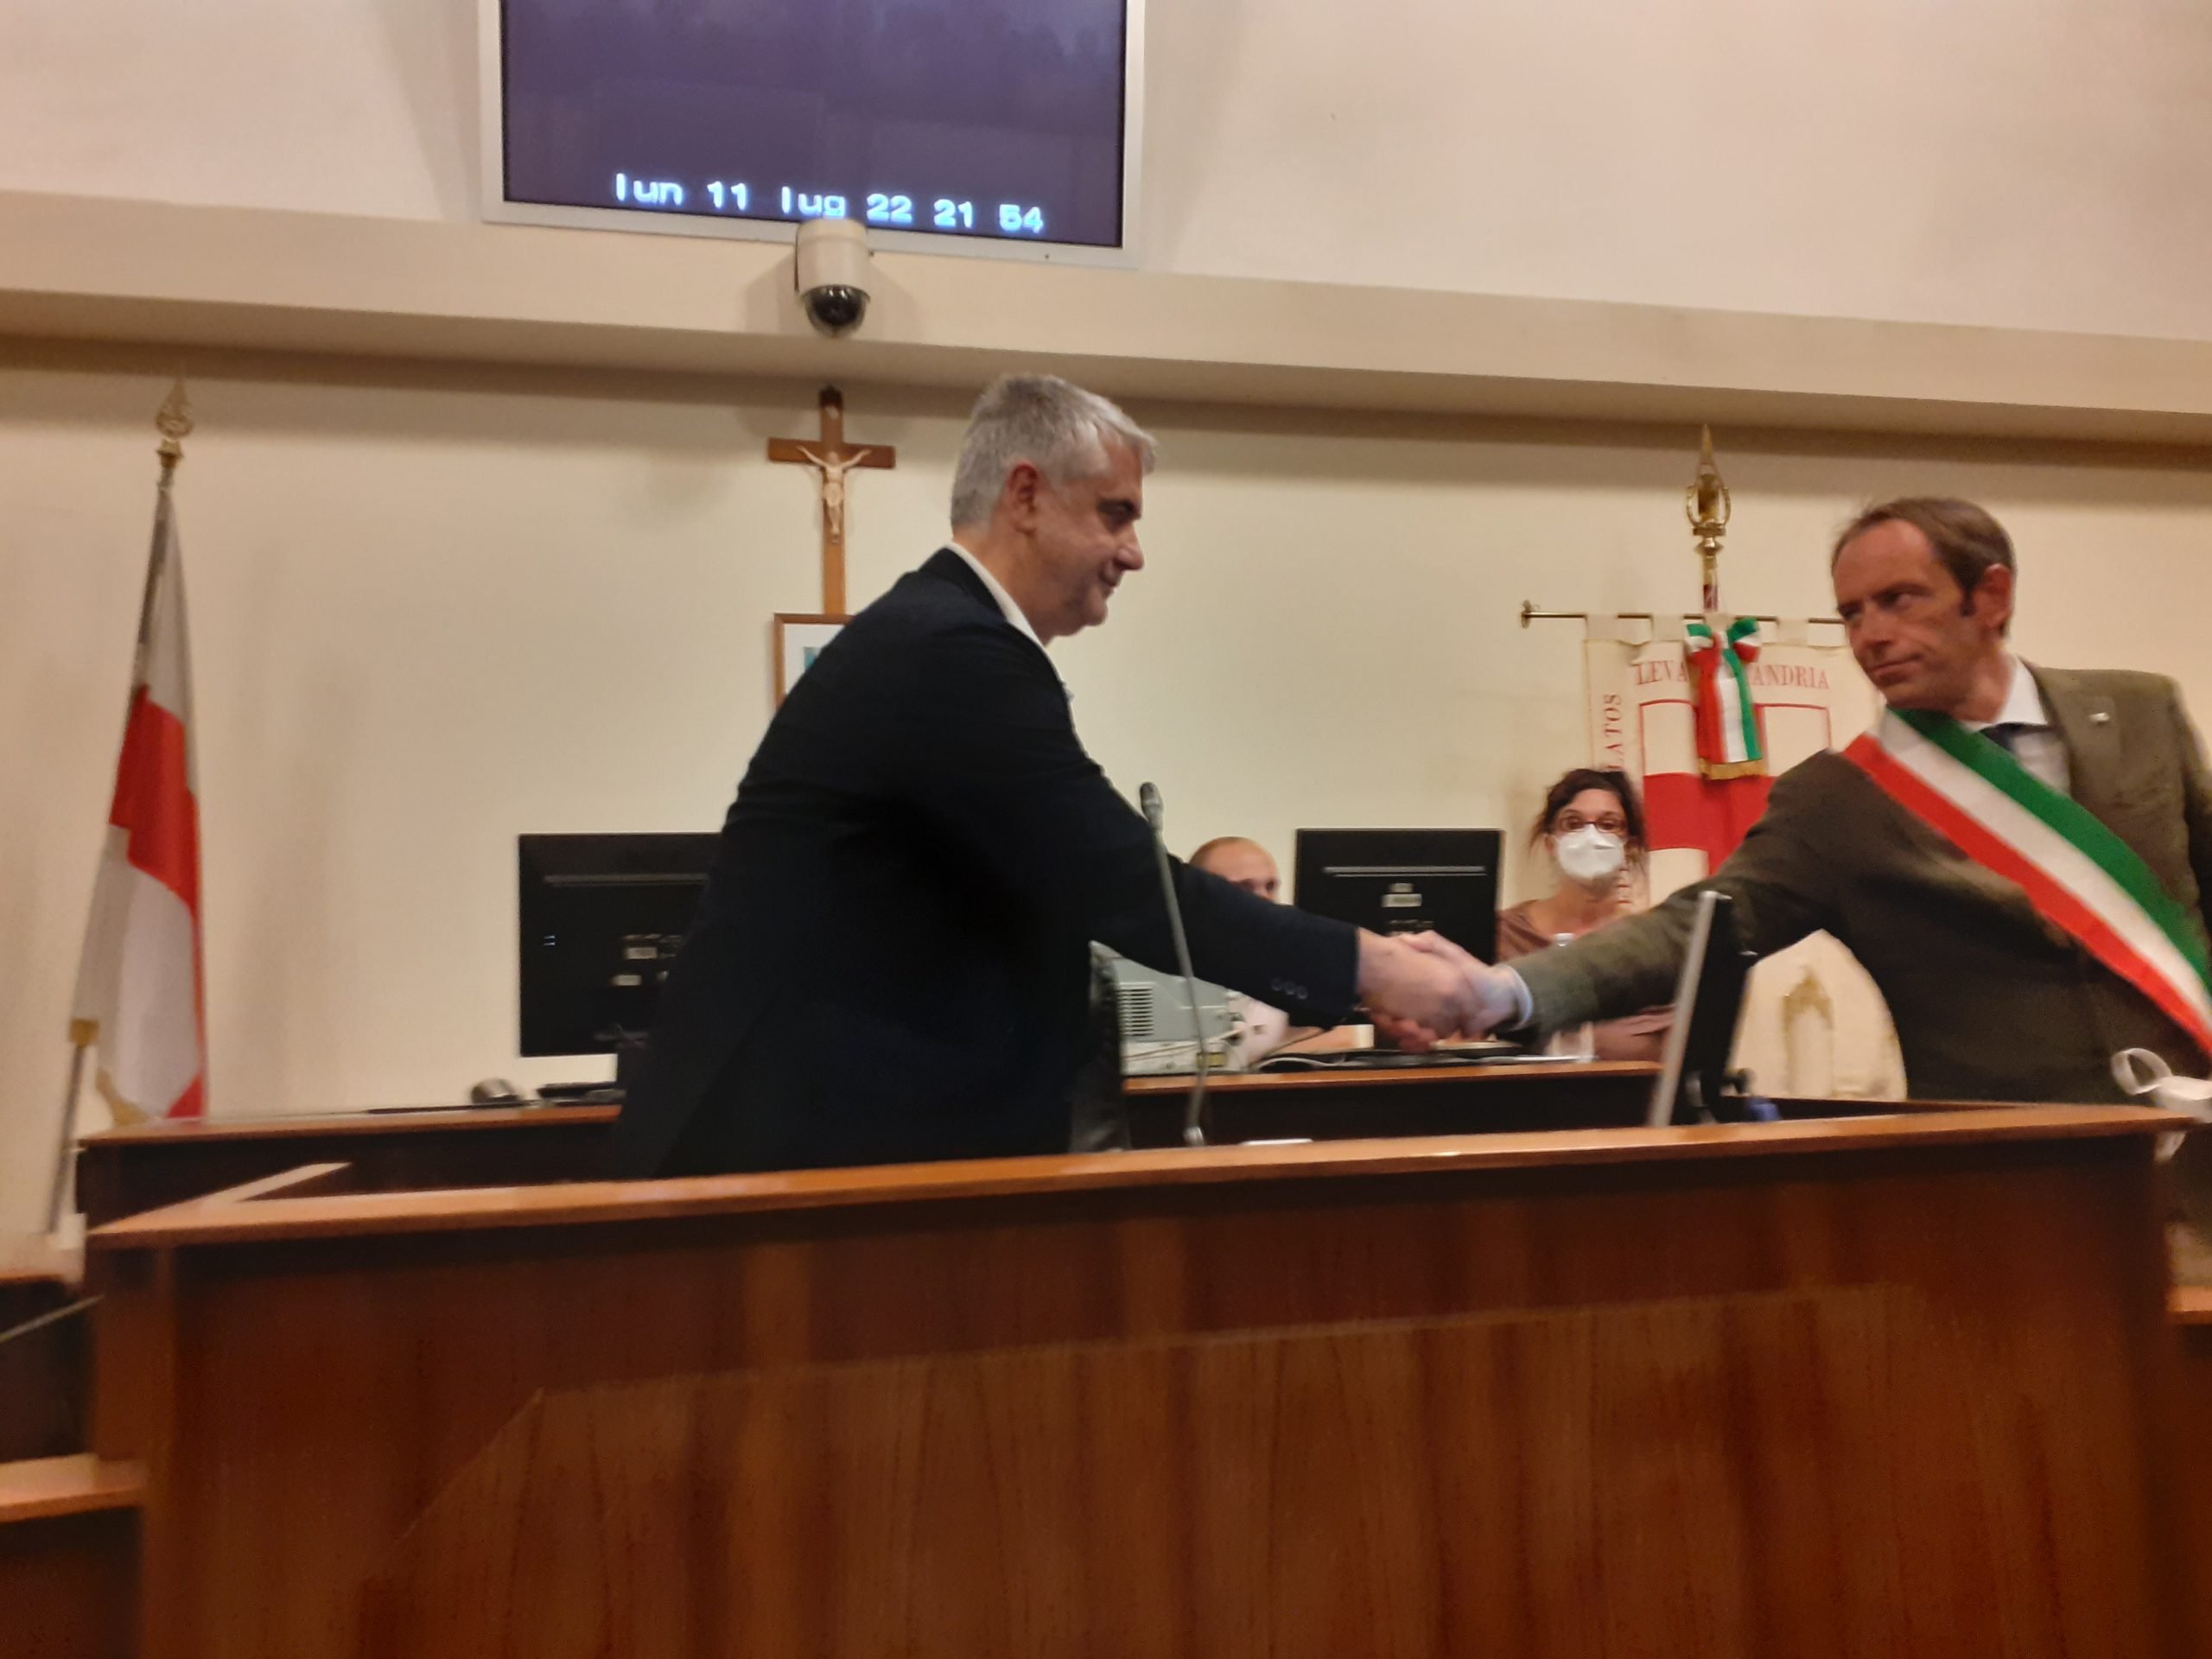 Consiglio comunale: eletto presidente Giovanni Barosini, contestato da parte del pubblico